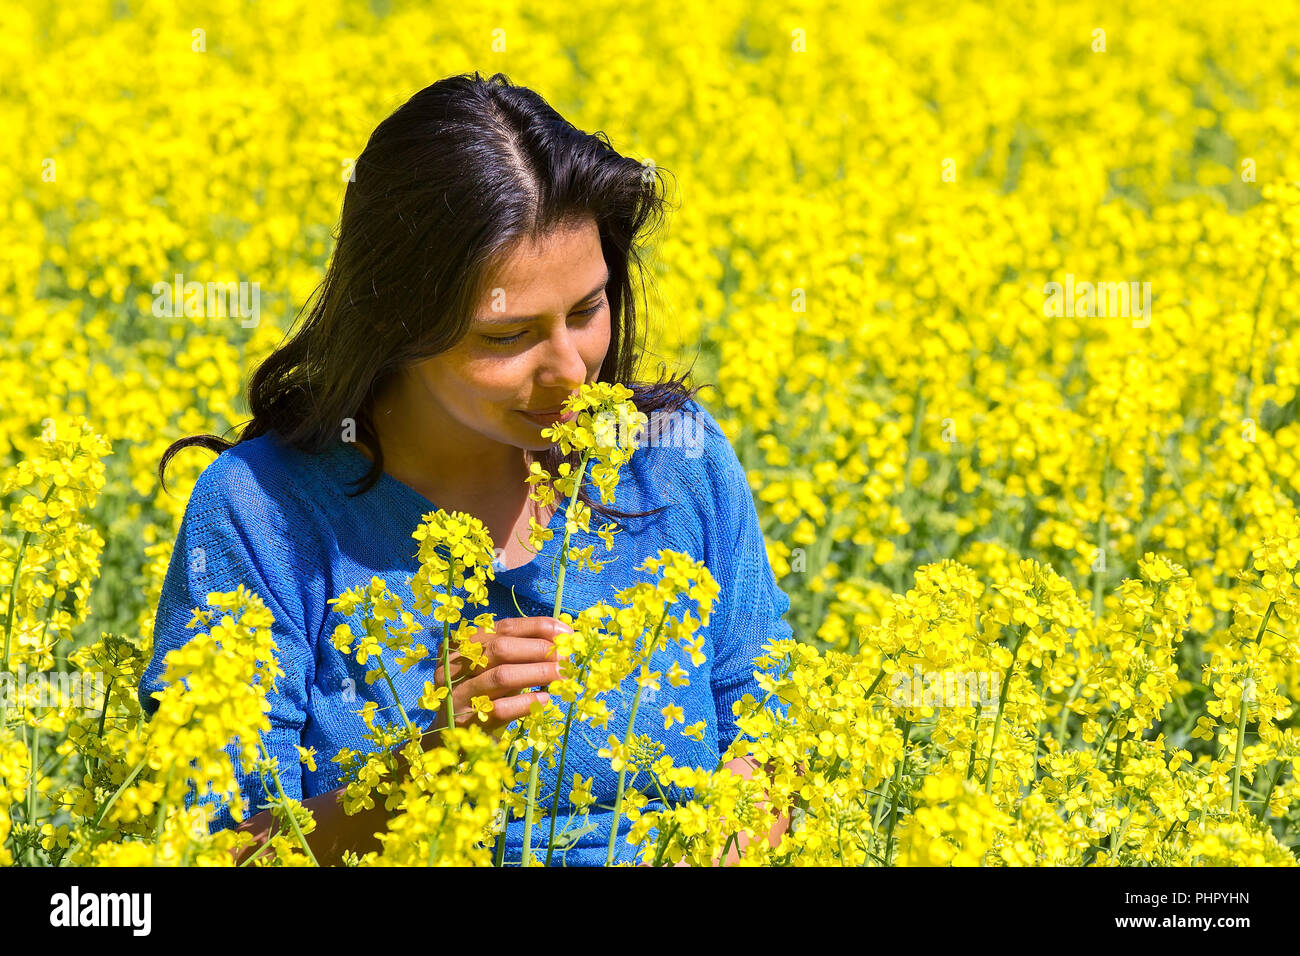 Odeurs femme fleur dans le champ de colza jaune Banque D'Images